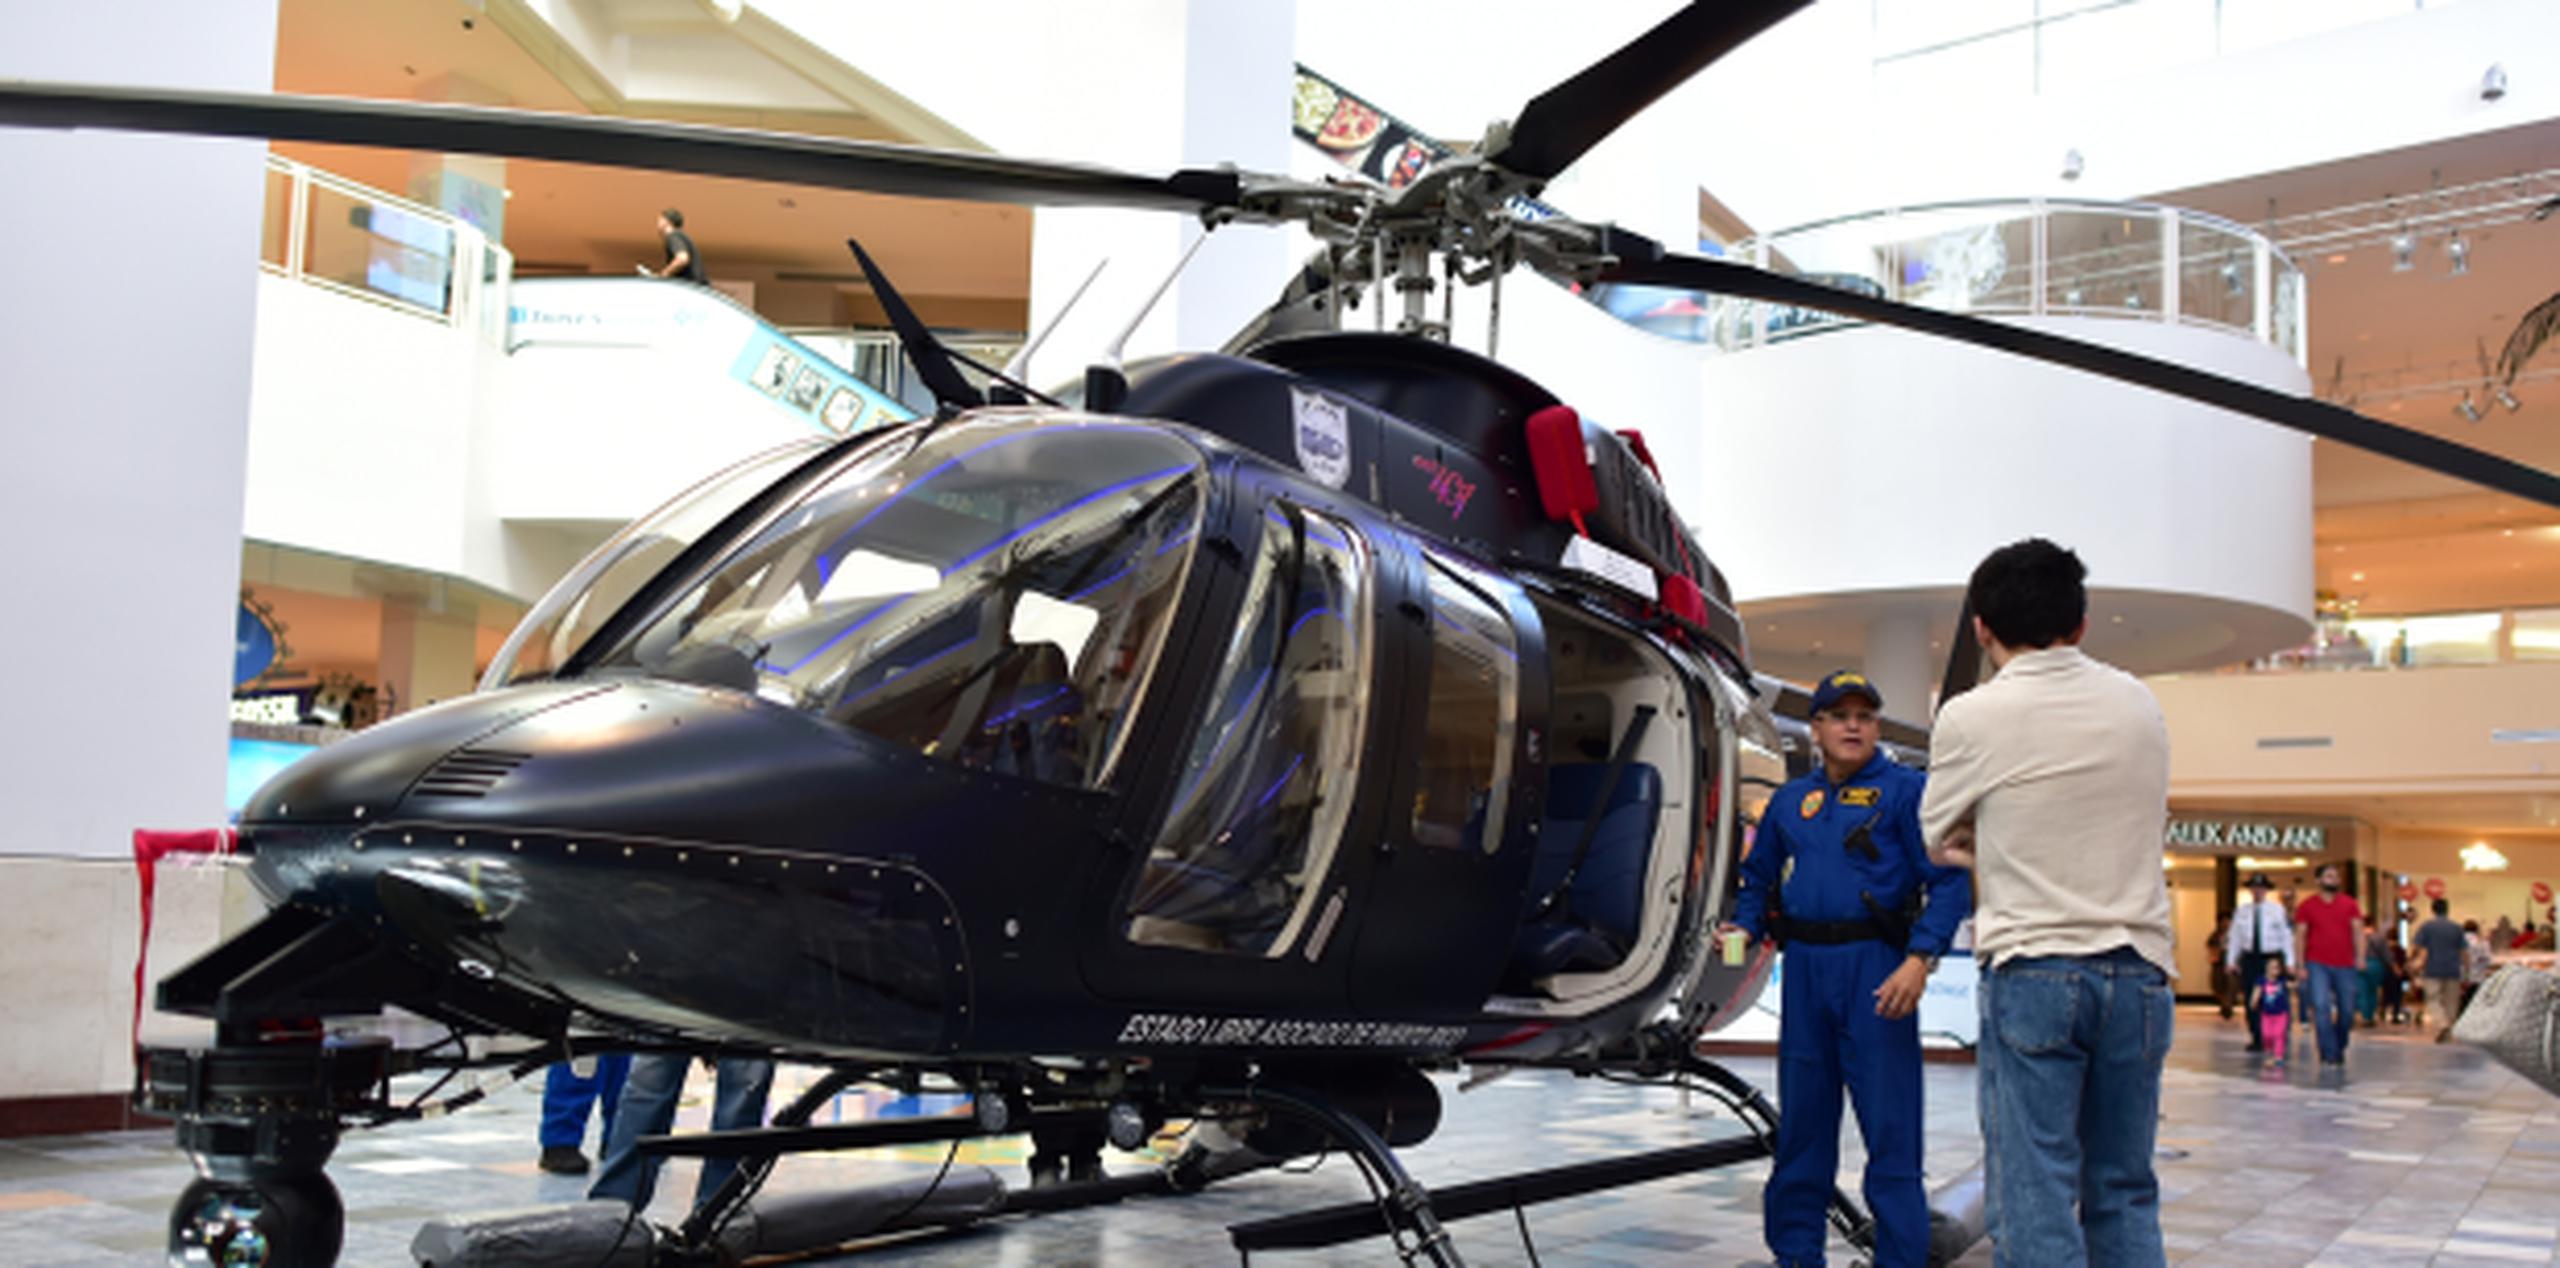 La nave es uno de siete helicópteros de la Policía, tiene un valor original de unos $2 millones y fue construido en el año 2000. (LUIS.ALCALADELOLMO@GFRMEDIA.COM)